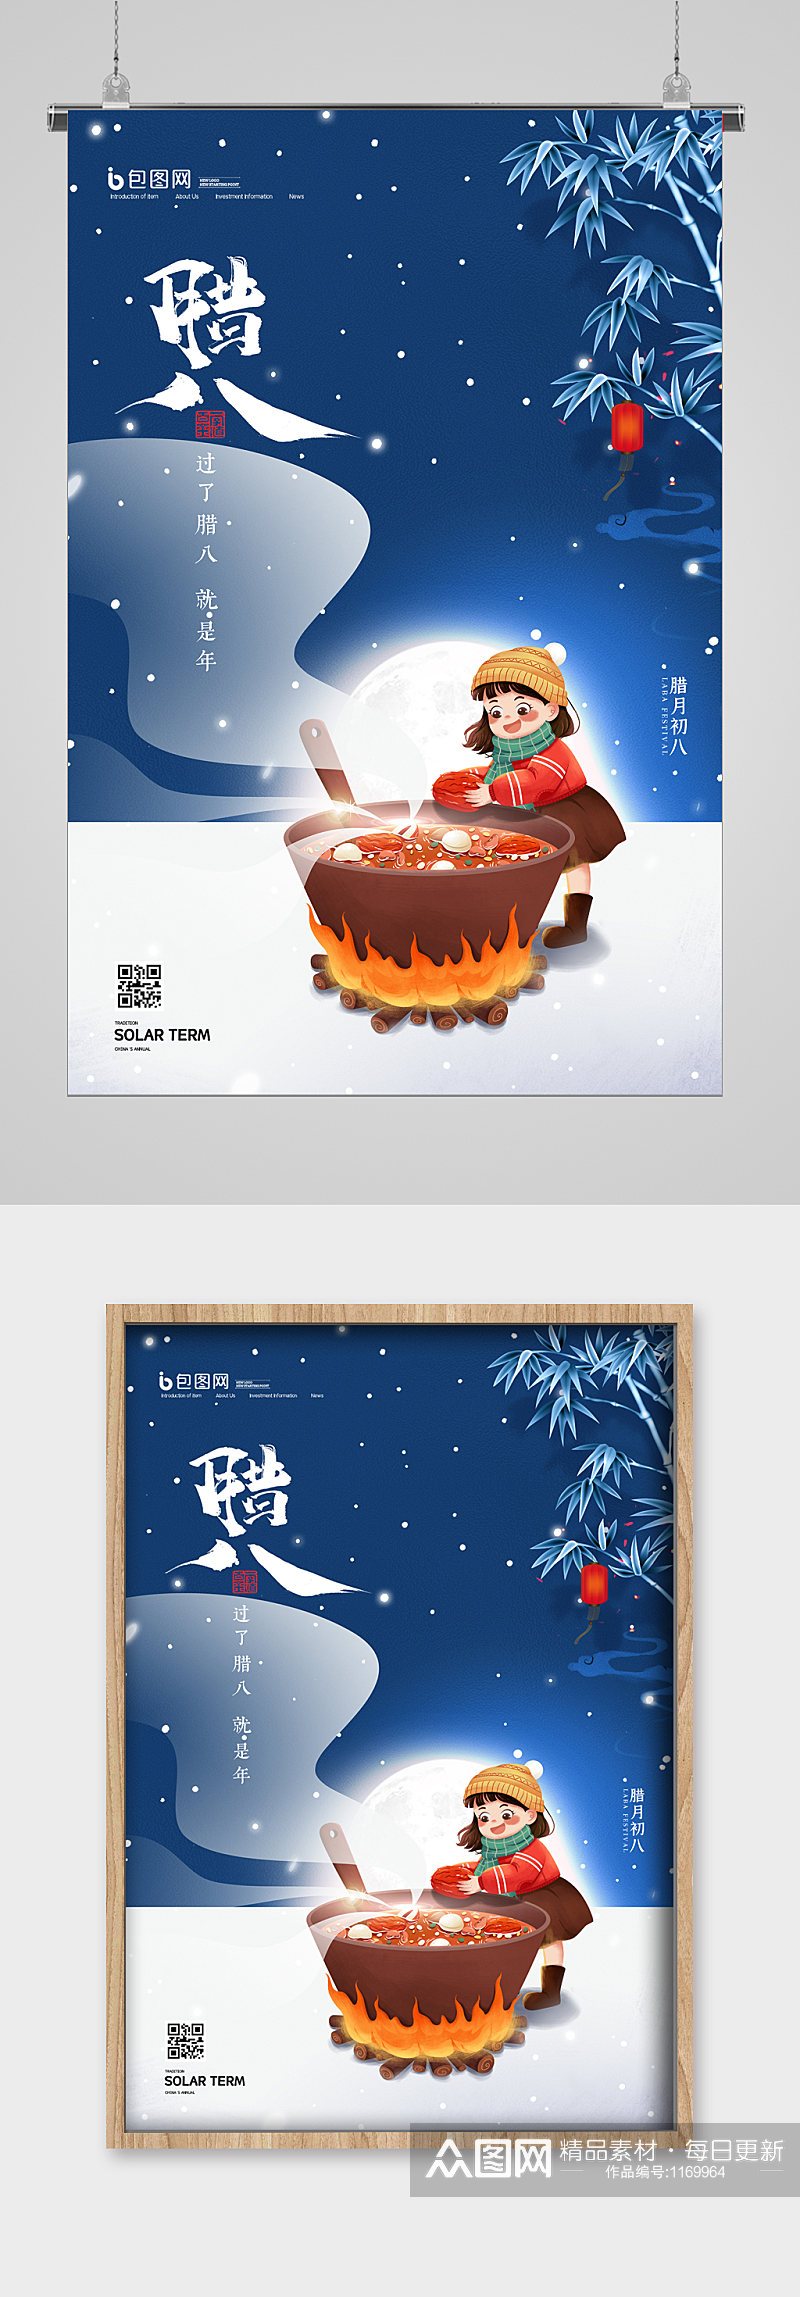 冬天节日腊八节喜庆宣传海报素材